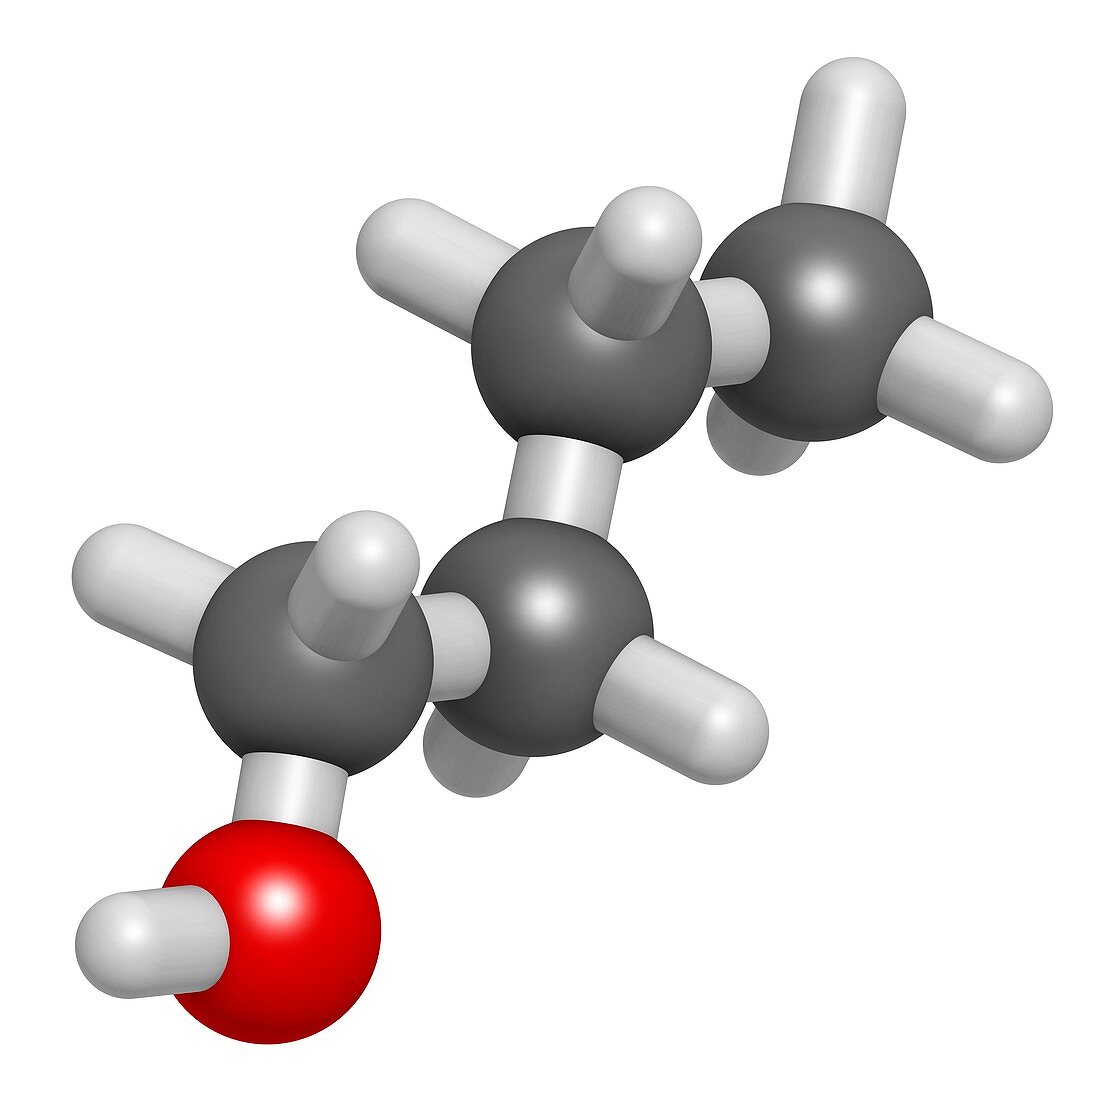 n-butanol molecule